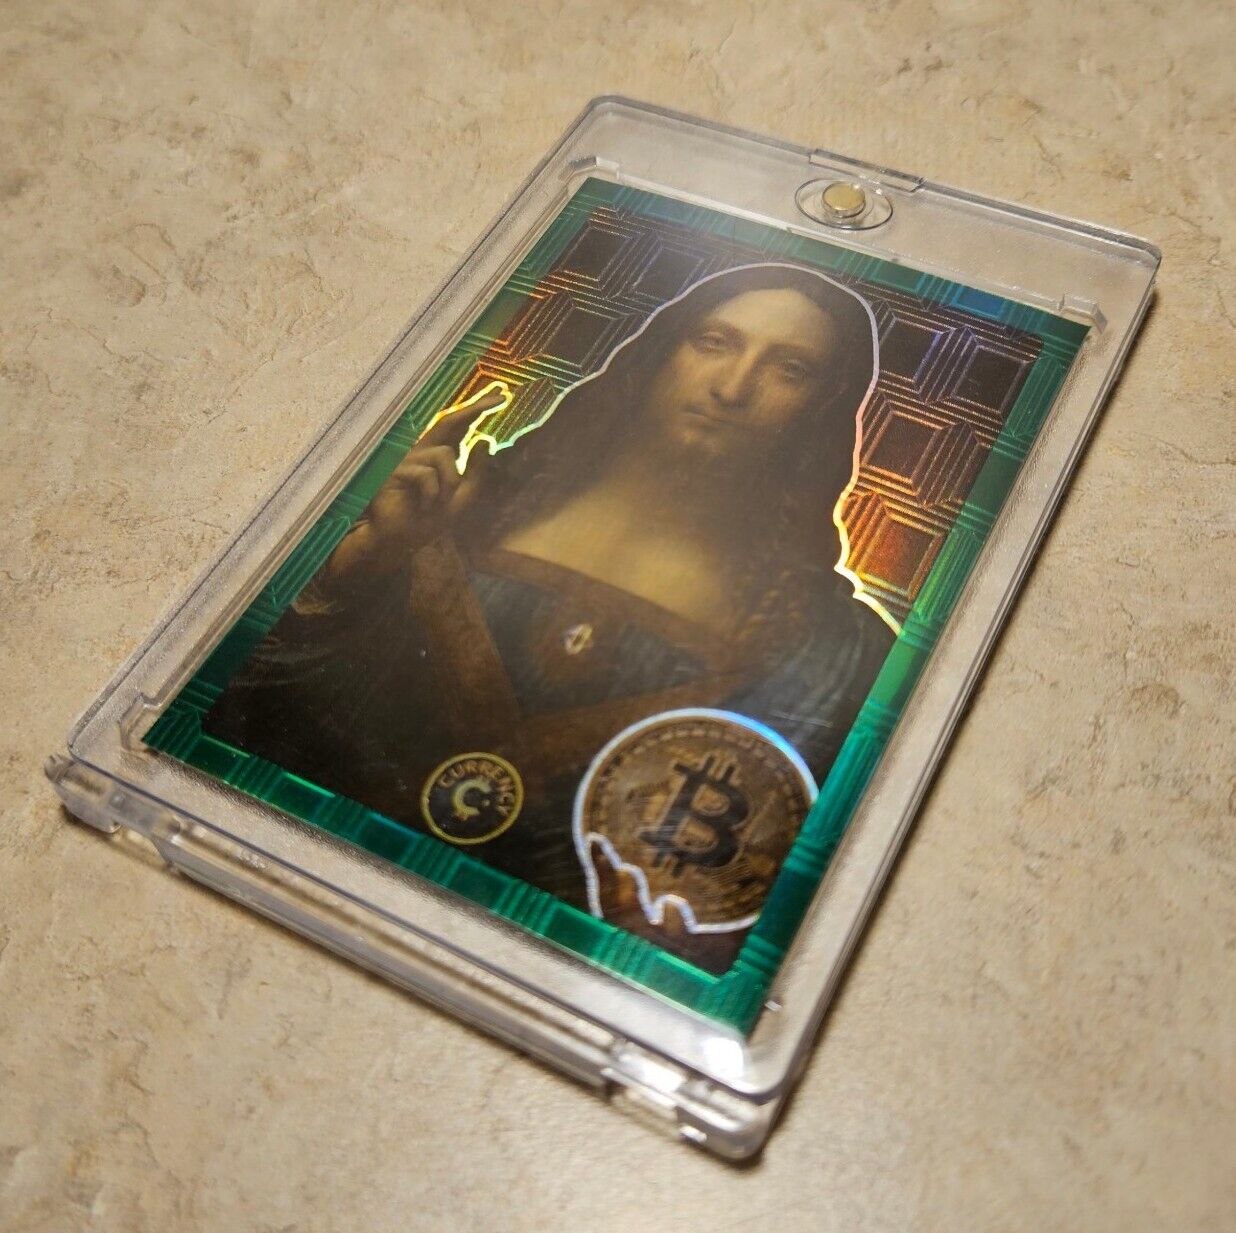 Cardsmiths Currency Series 1 Salvator Mundi #57 Emerald 14/99